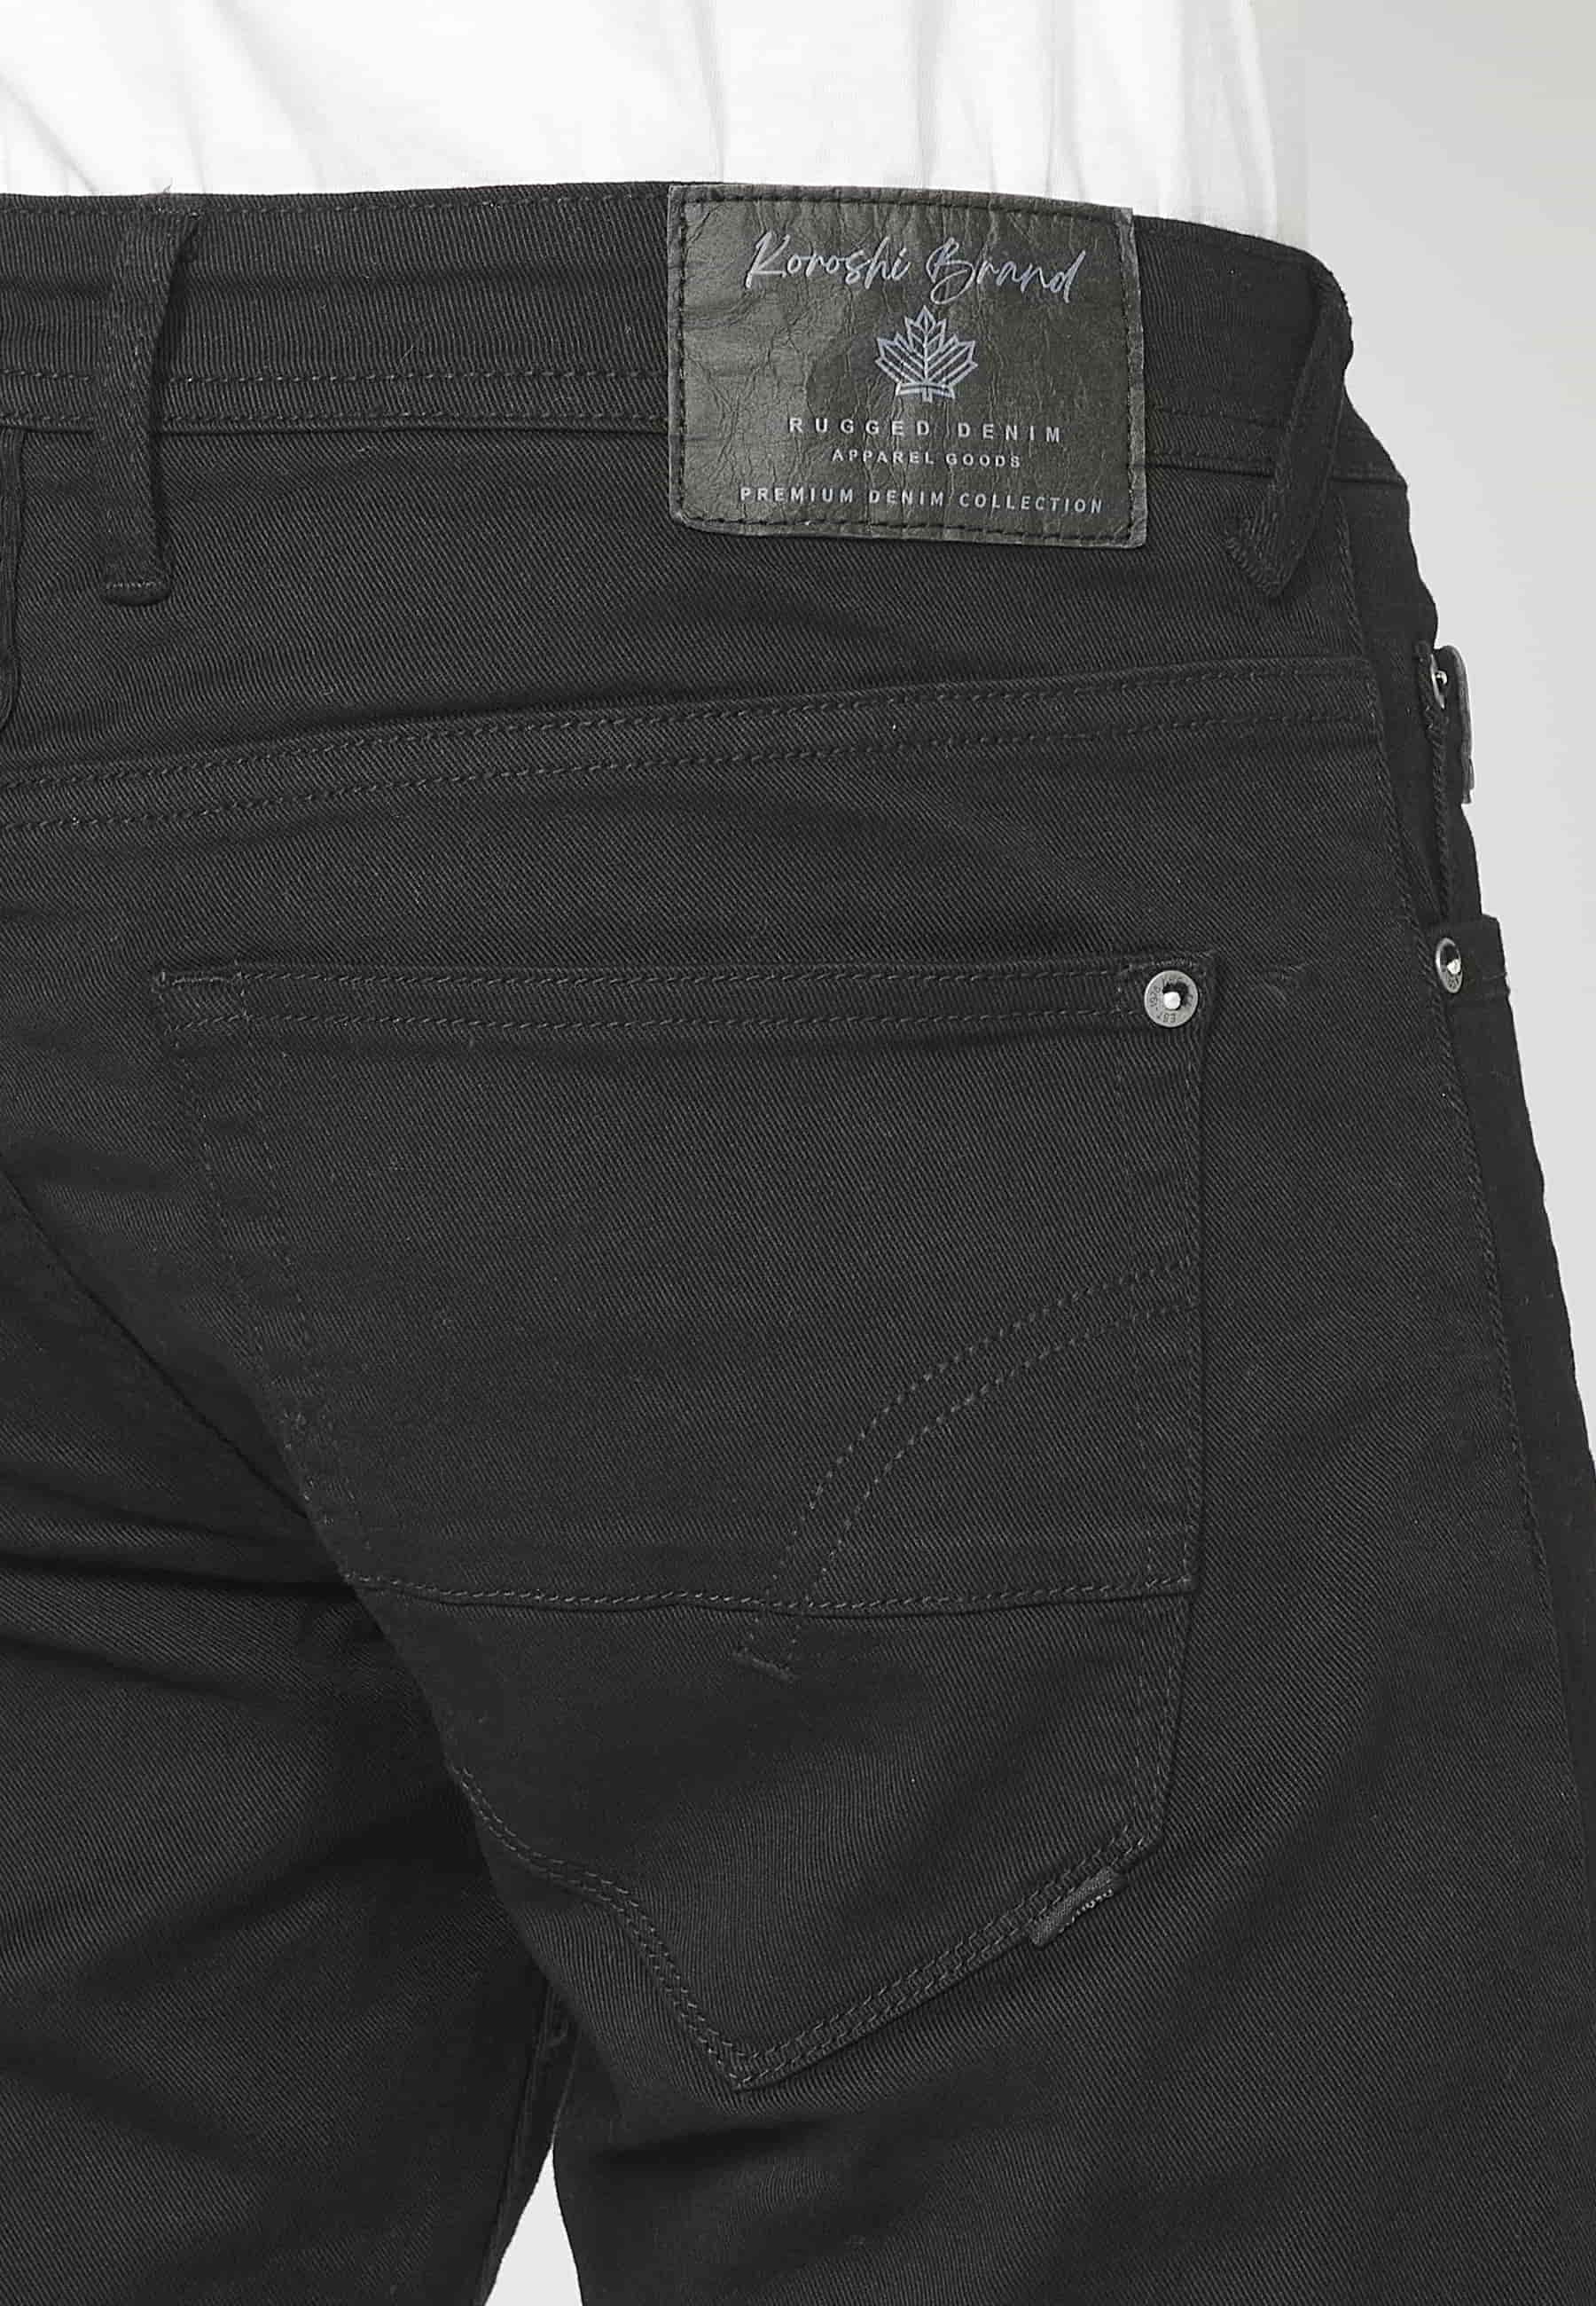 Pantalons llargs strech regular fit, amb cinc butxaques, color Negre, per a Home